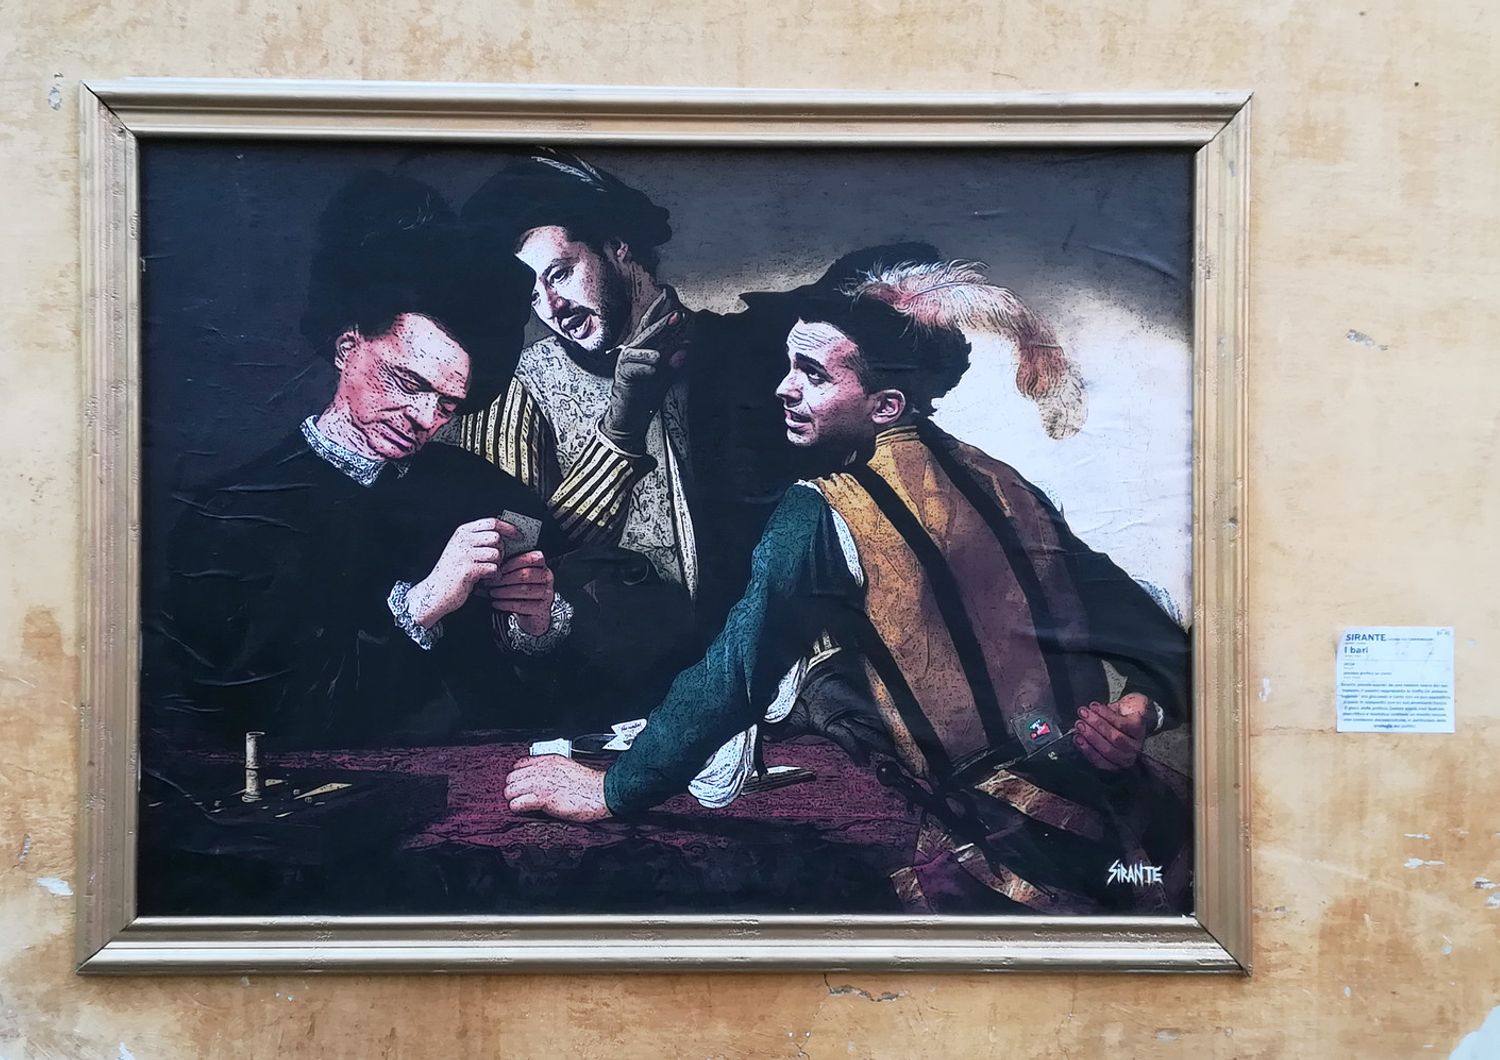 &nbsp;L'opera dello street artist Sirante che ritrae Matteo Salvini, Luigi Di Maio e Silvio Berlusconi nei panni dei personaggi de 'I Bari' di Caravaggio